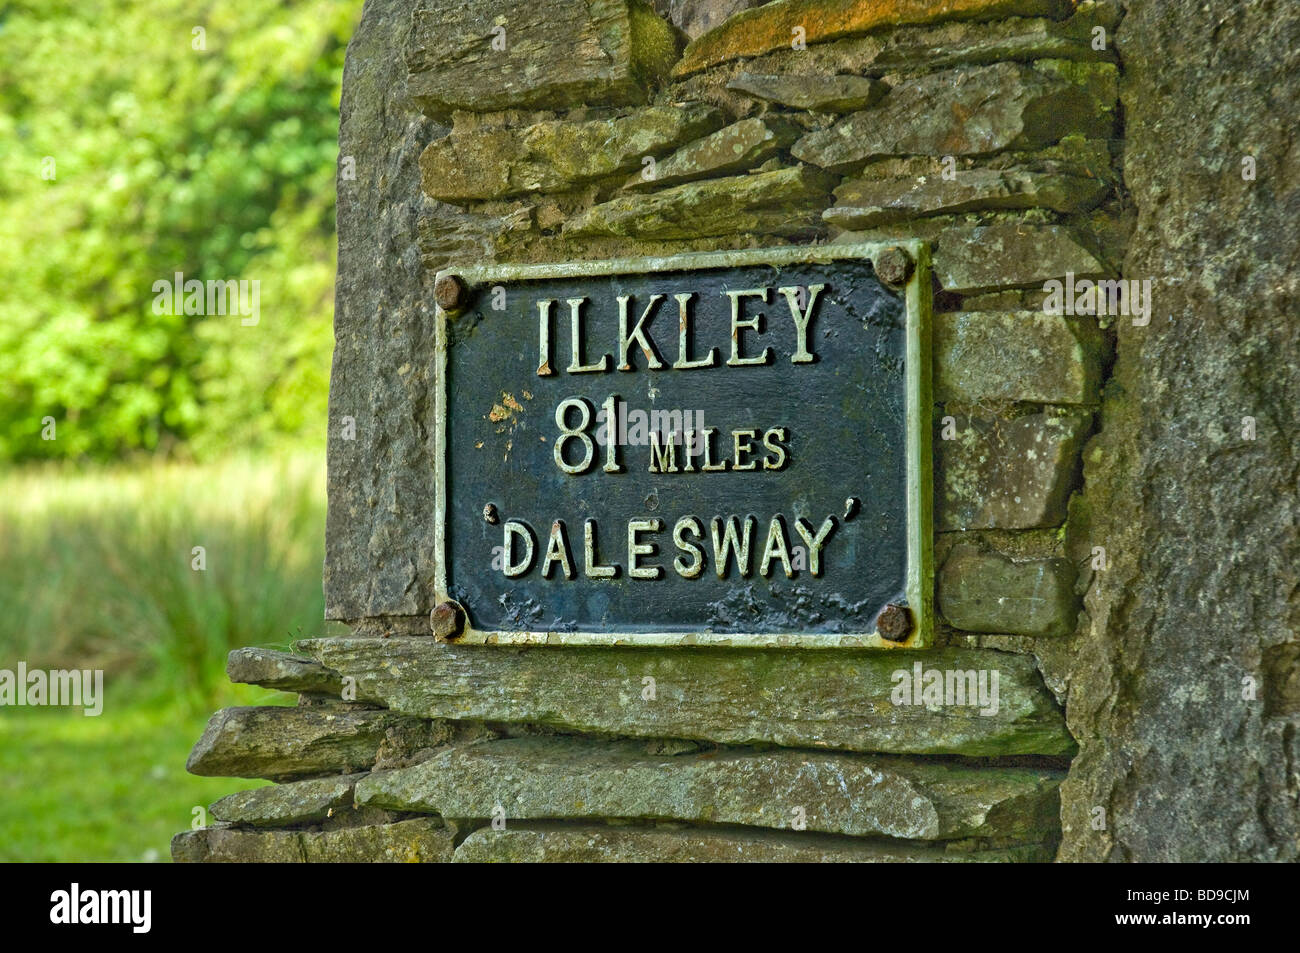 Dalesway Fußpfad Schild in der Nähe zeigt Ilkley 81 Meilen Cumbria England GB Vereinigtes Königreich GB Großbritannien Stockfoto